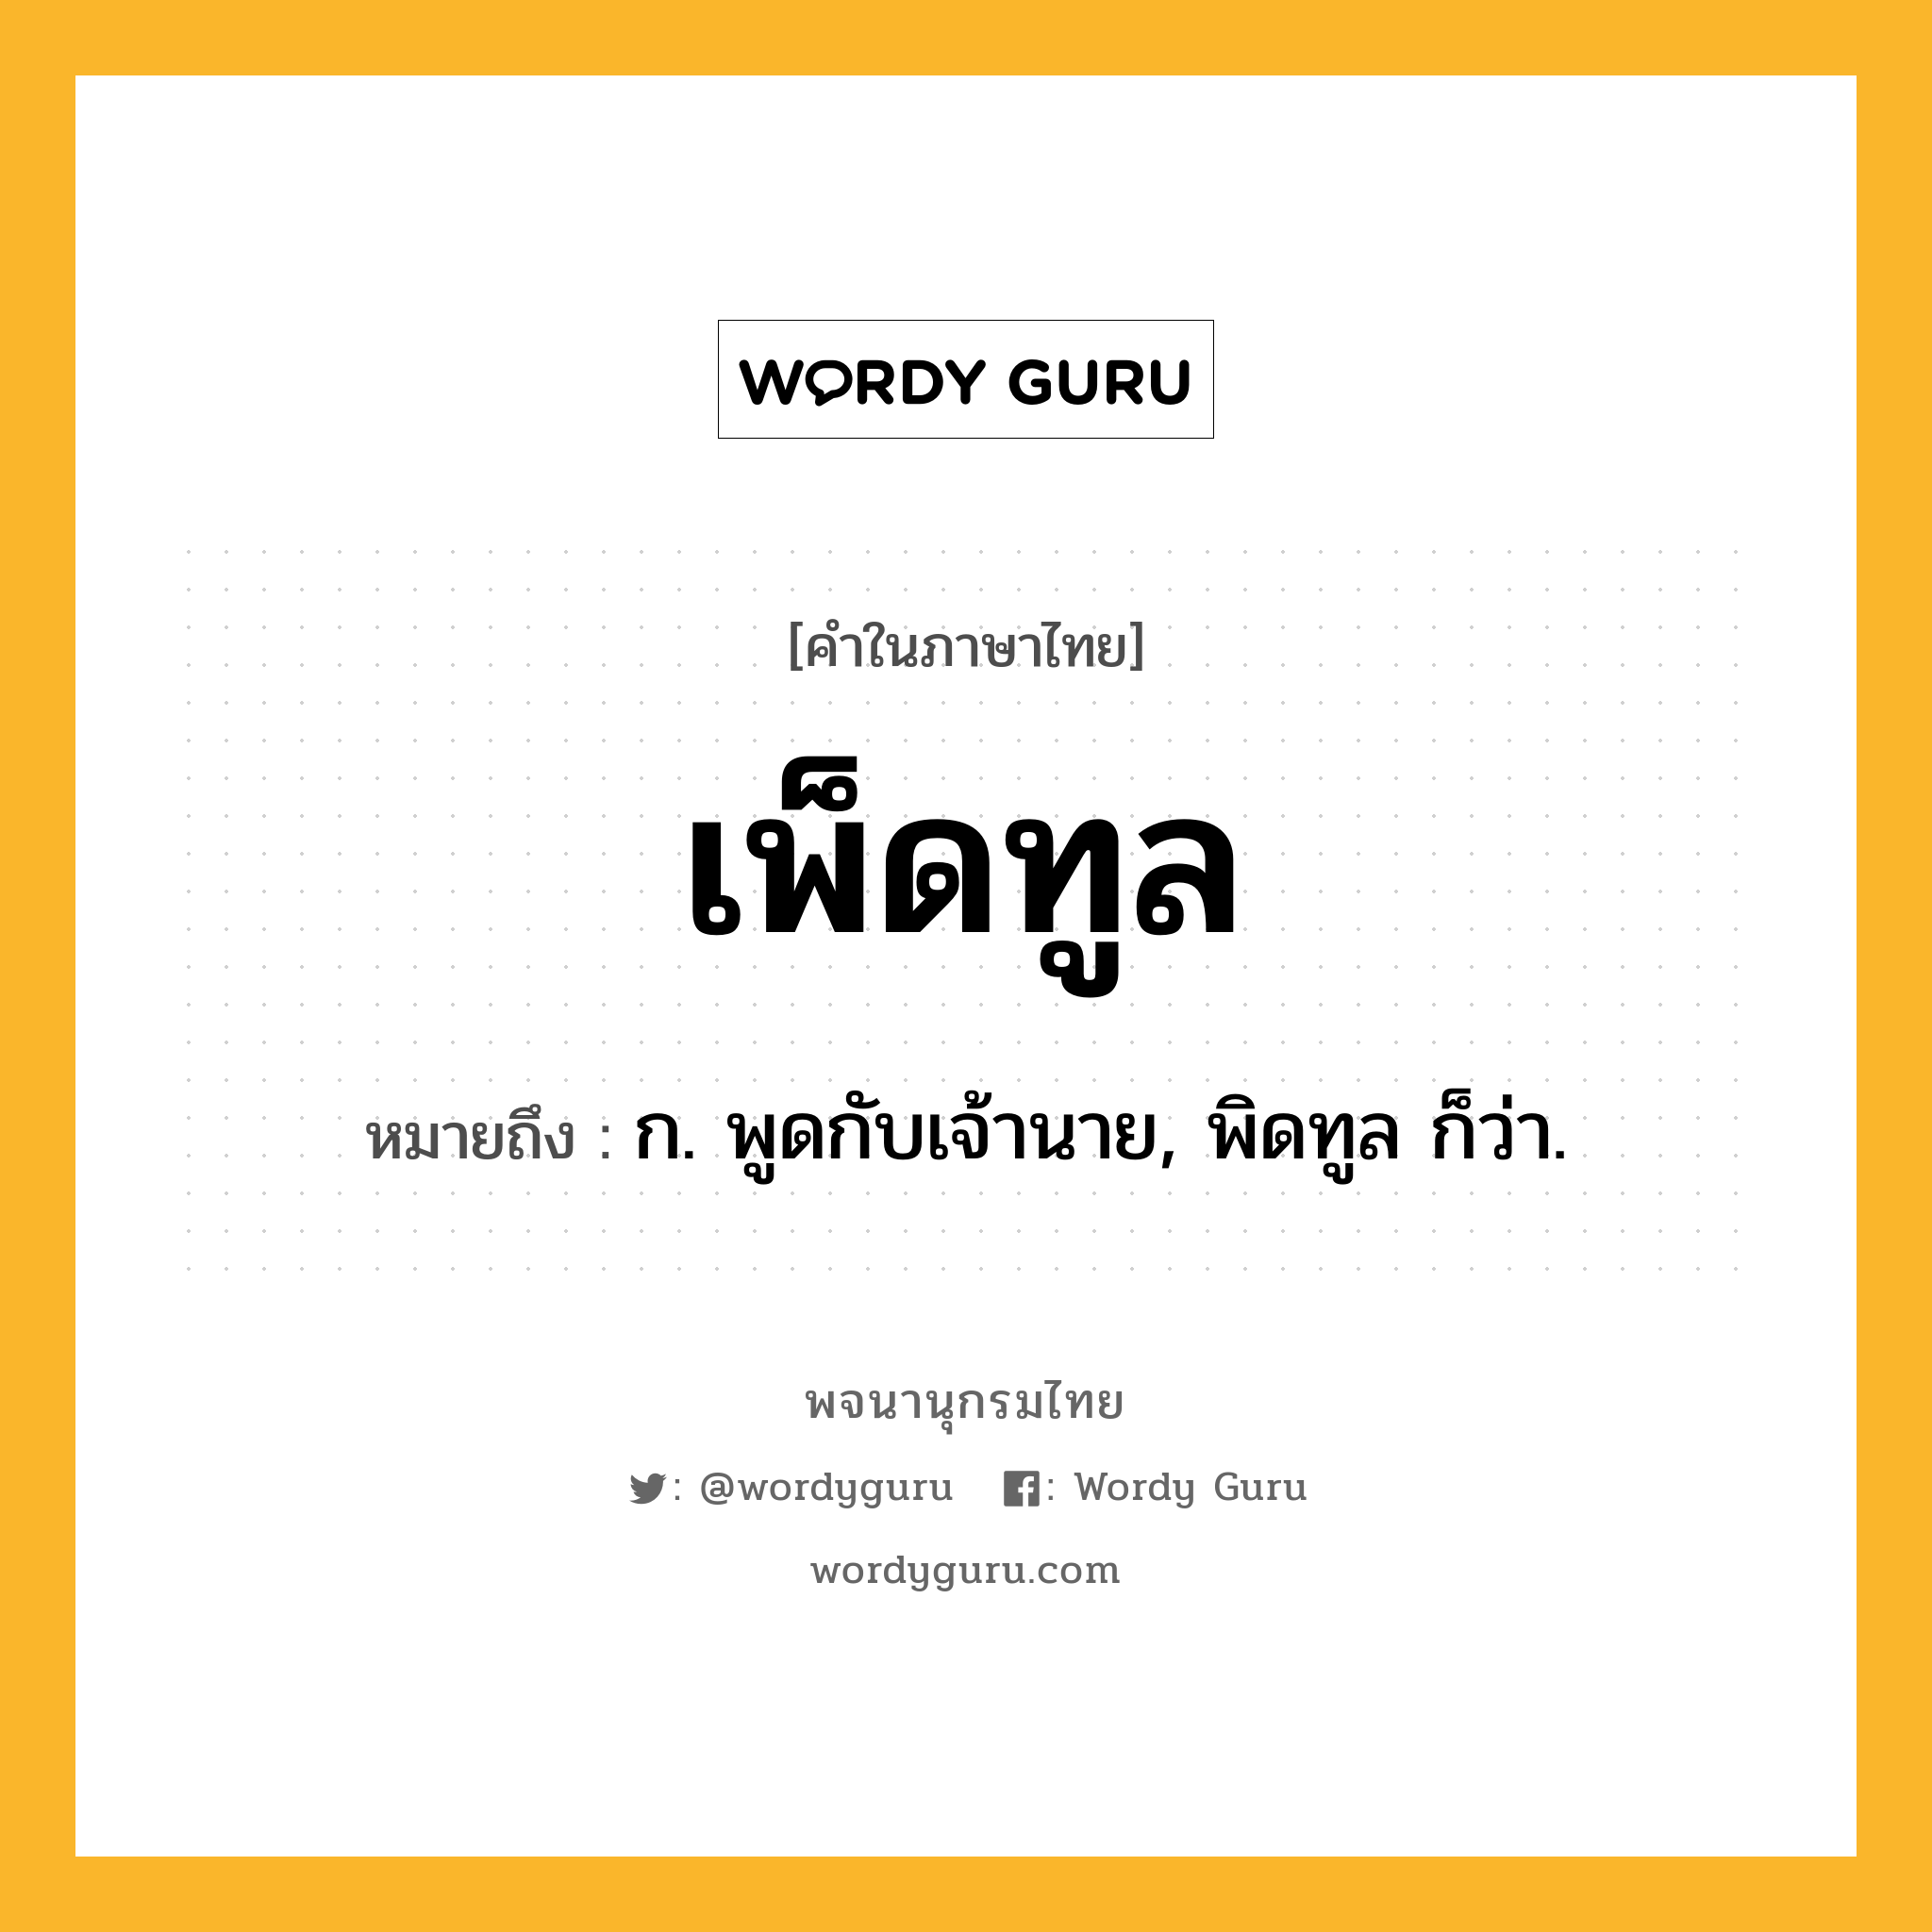 เพ็ดทูล ความหมาย หมายถึงอะไร?, คำในภาษาไทย เพ็ดทูล หมายถึง ก. พูดกับเจ้านาย, พิดทูล ก็ว่า.